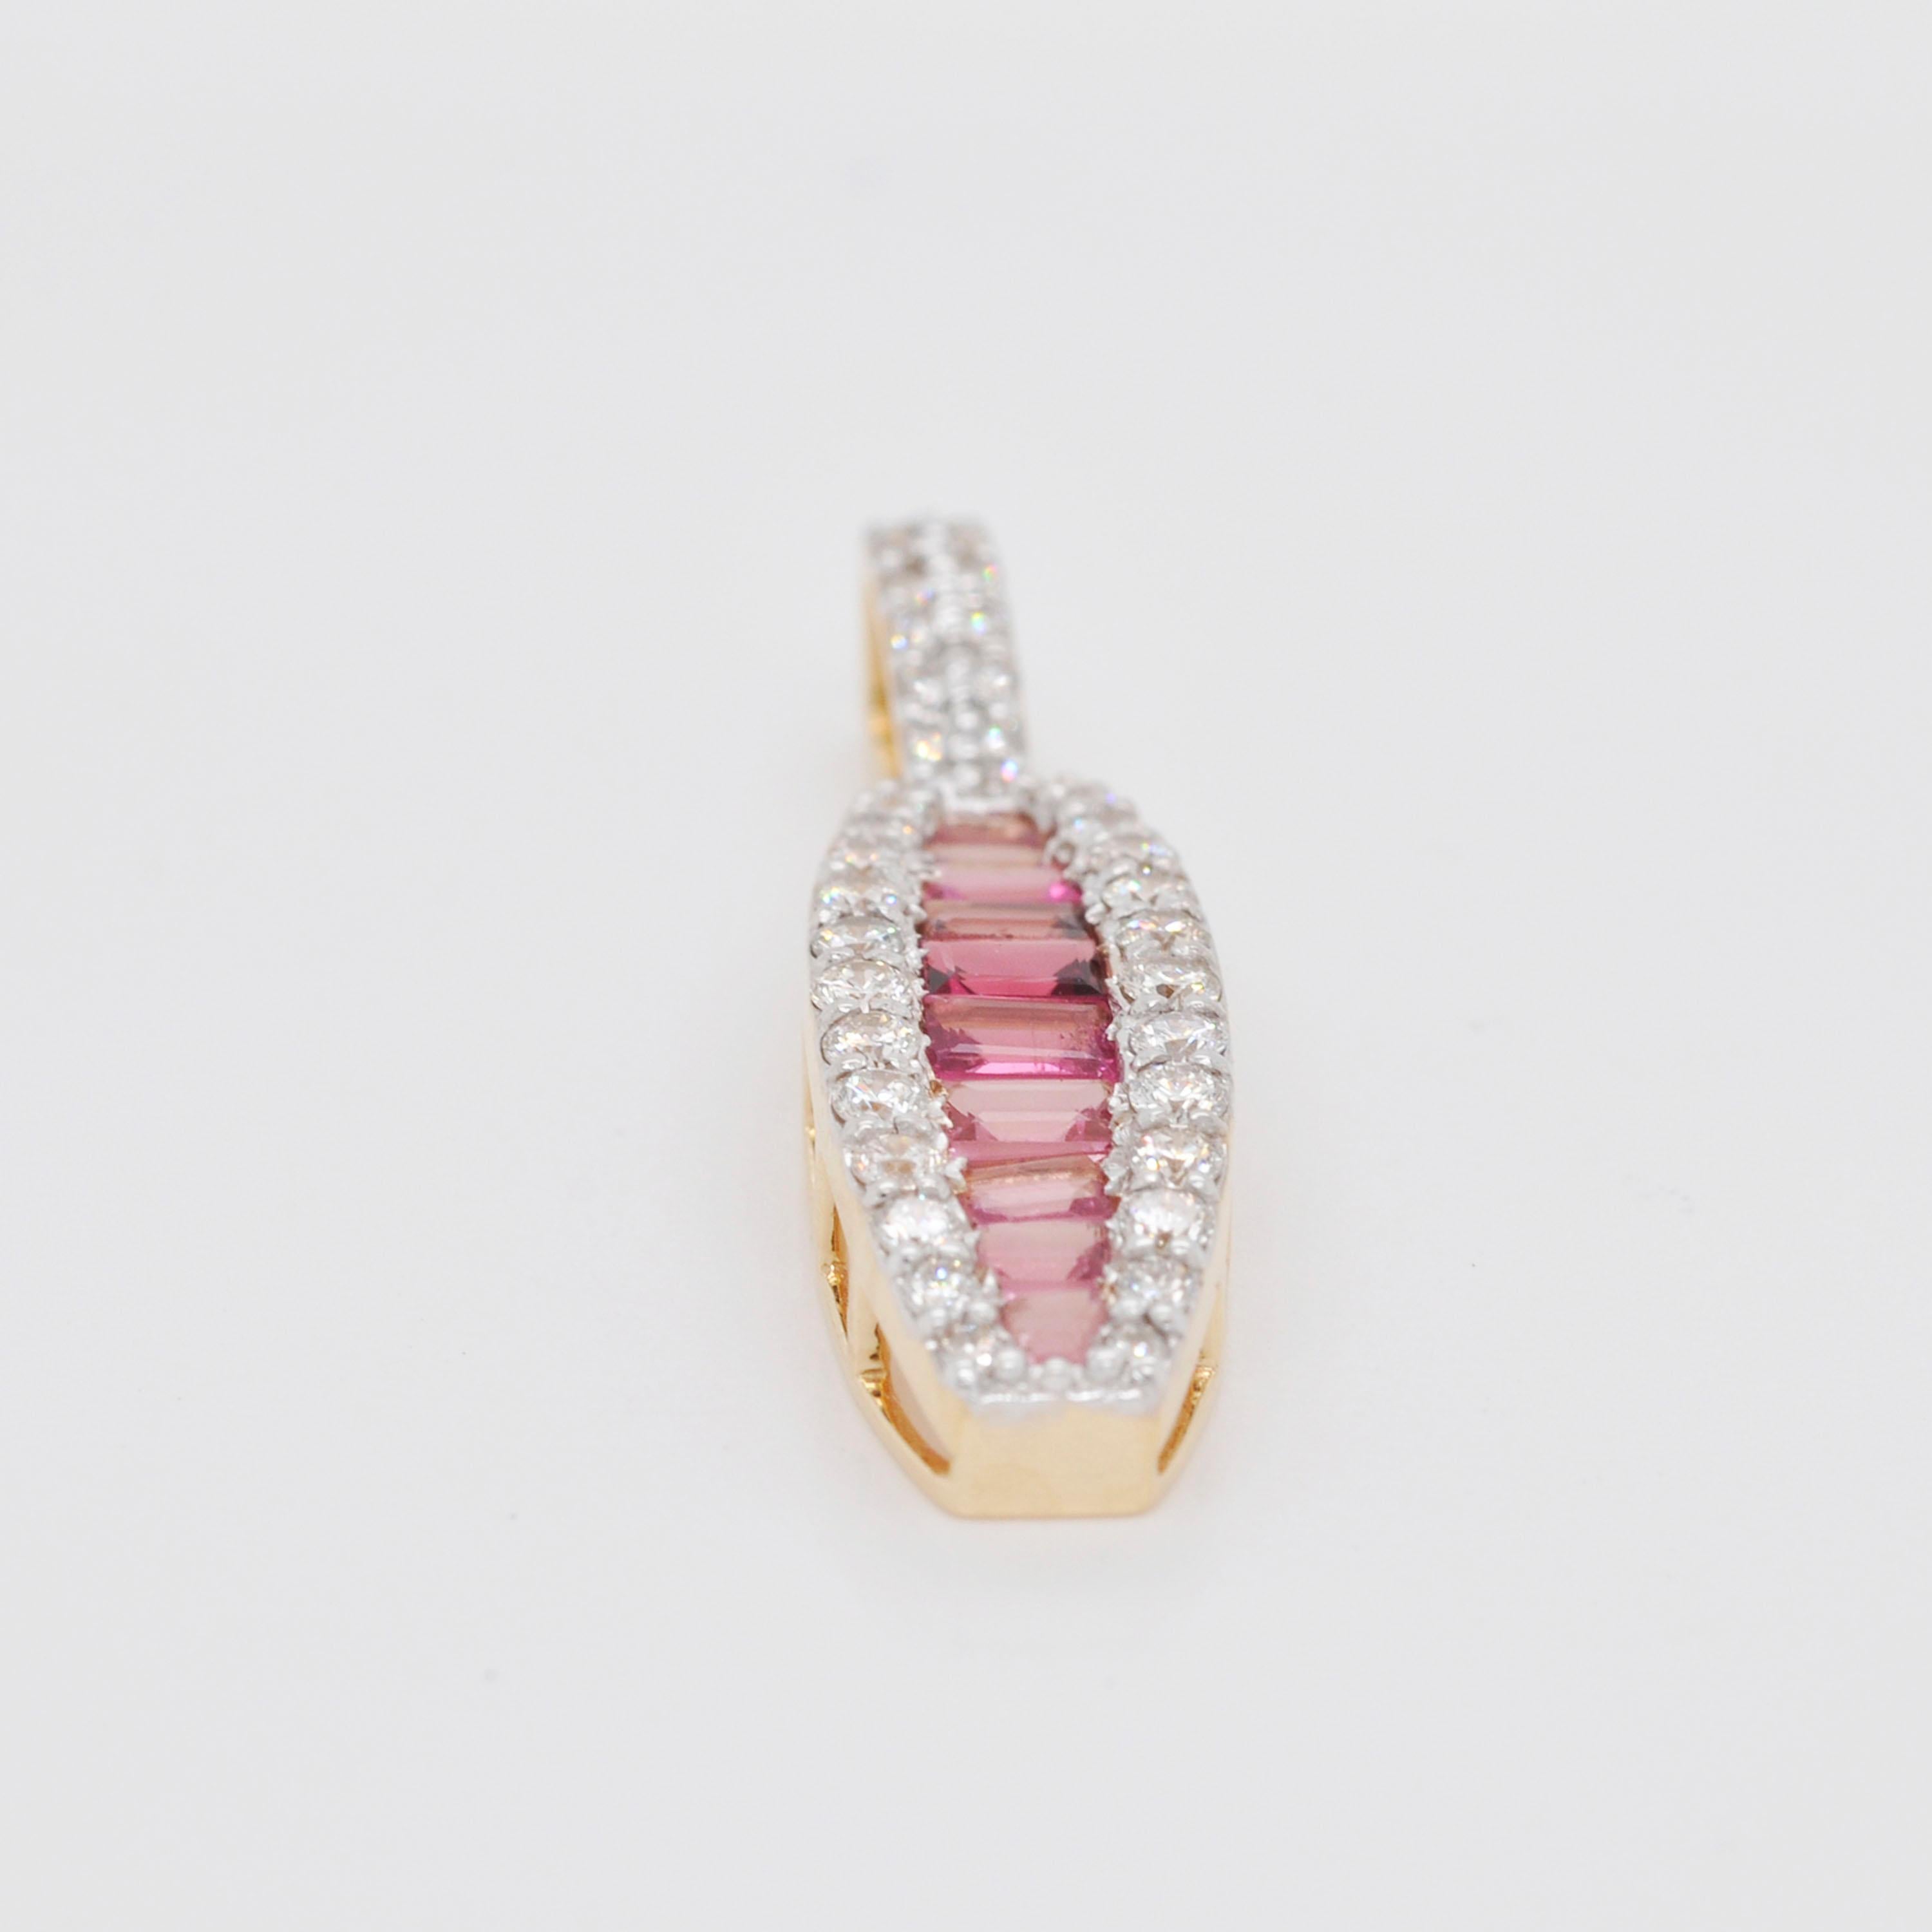 18 Karat Gold Channel Set Pink Tourmaline Baguette Diamond Pendant Necklace For Sale 2